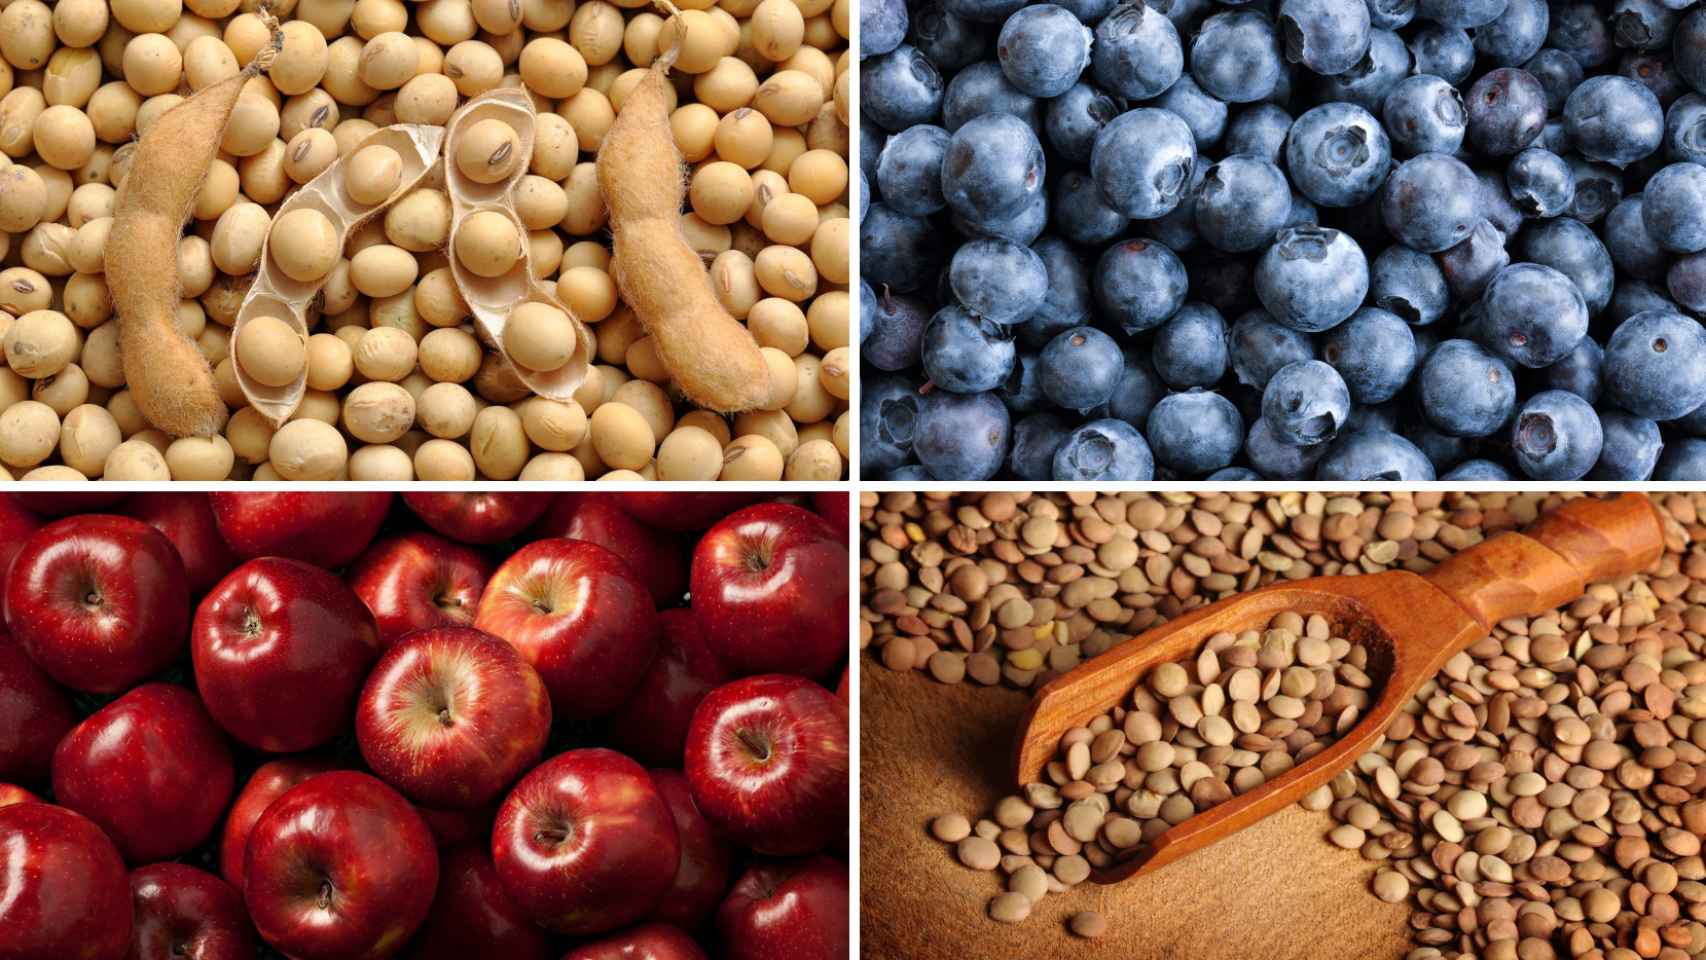 Entre los alimentos destacados podemos encontrar las manzanas, los arándanos, lentejas y la soja.